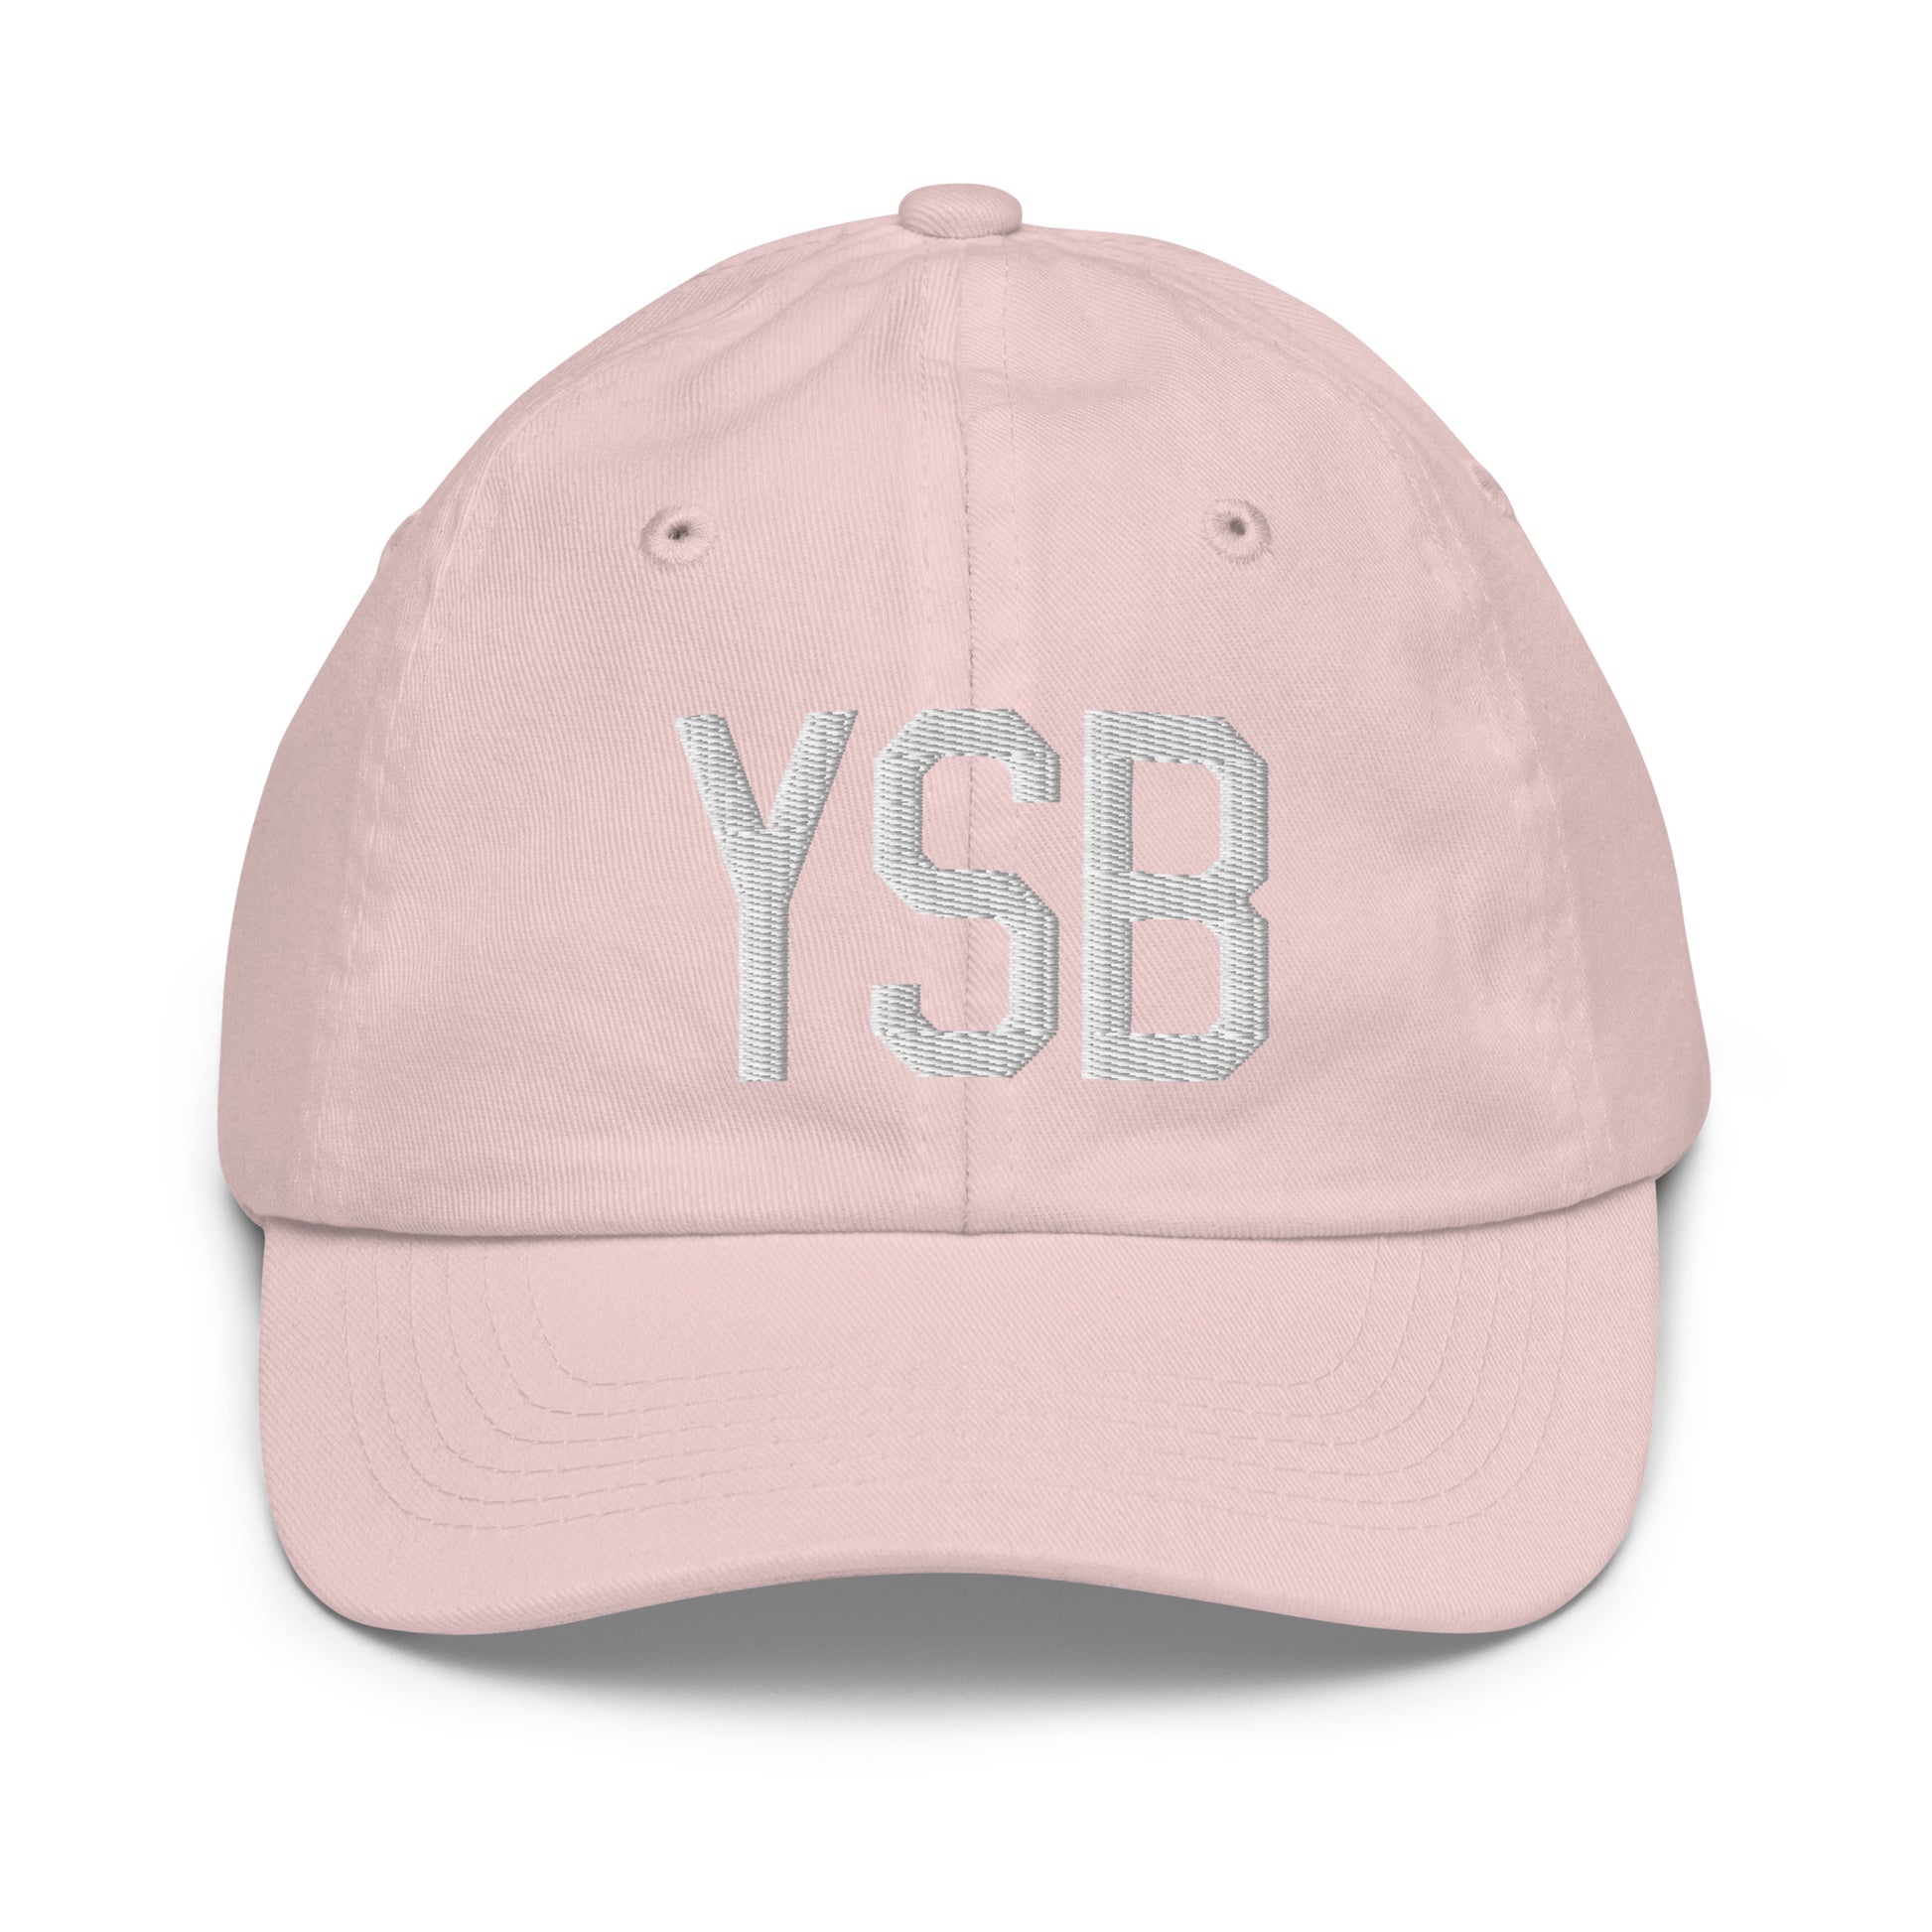 Airport Code Kid's Baseball Cap - White • YSB Sudbury • YHM Designs - Image 31